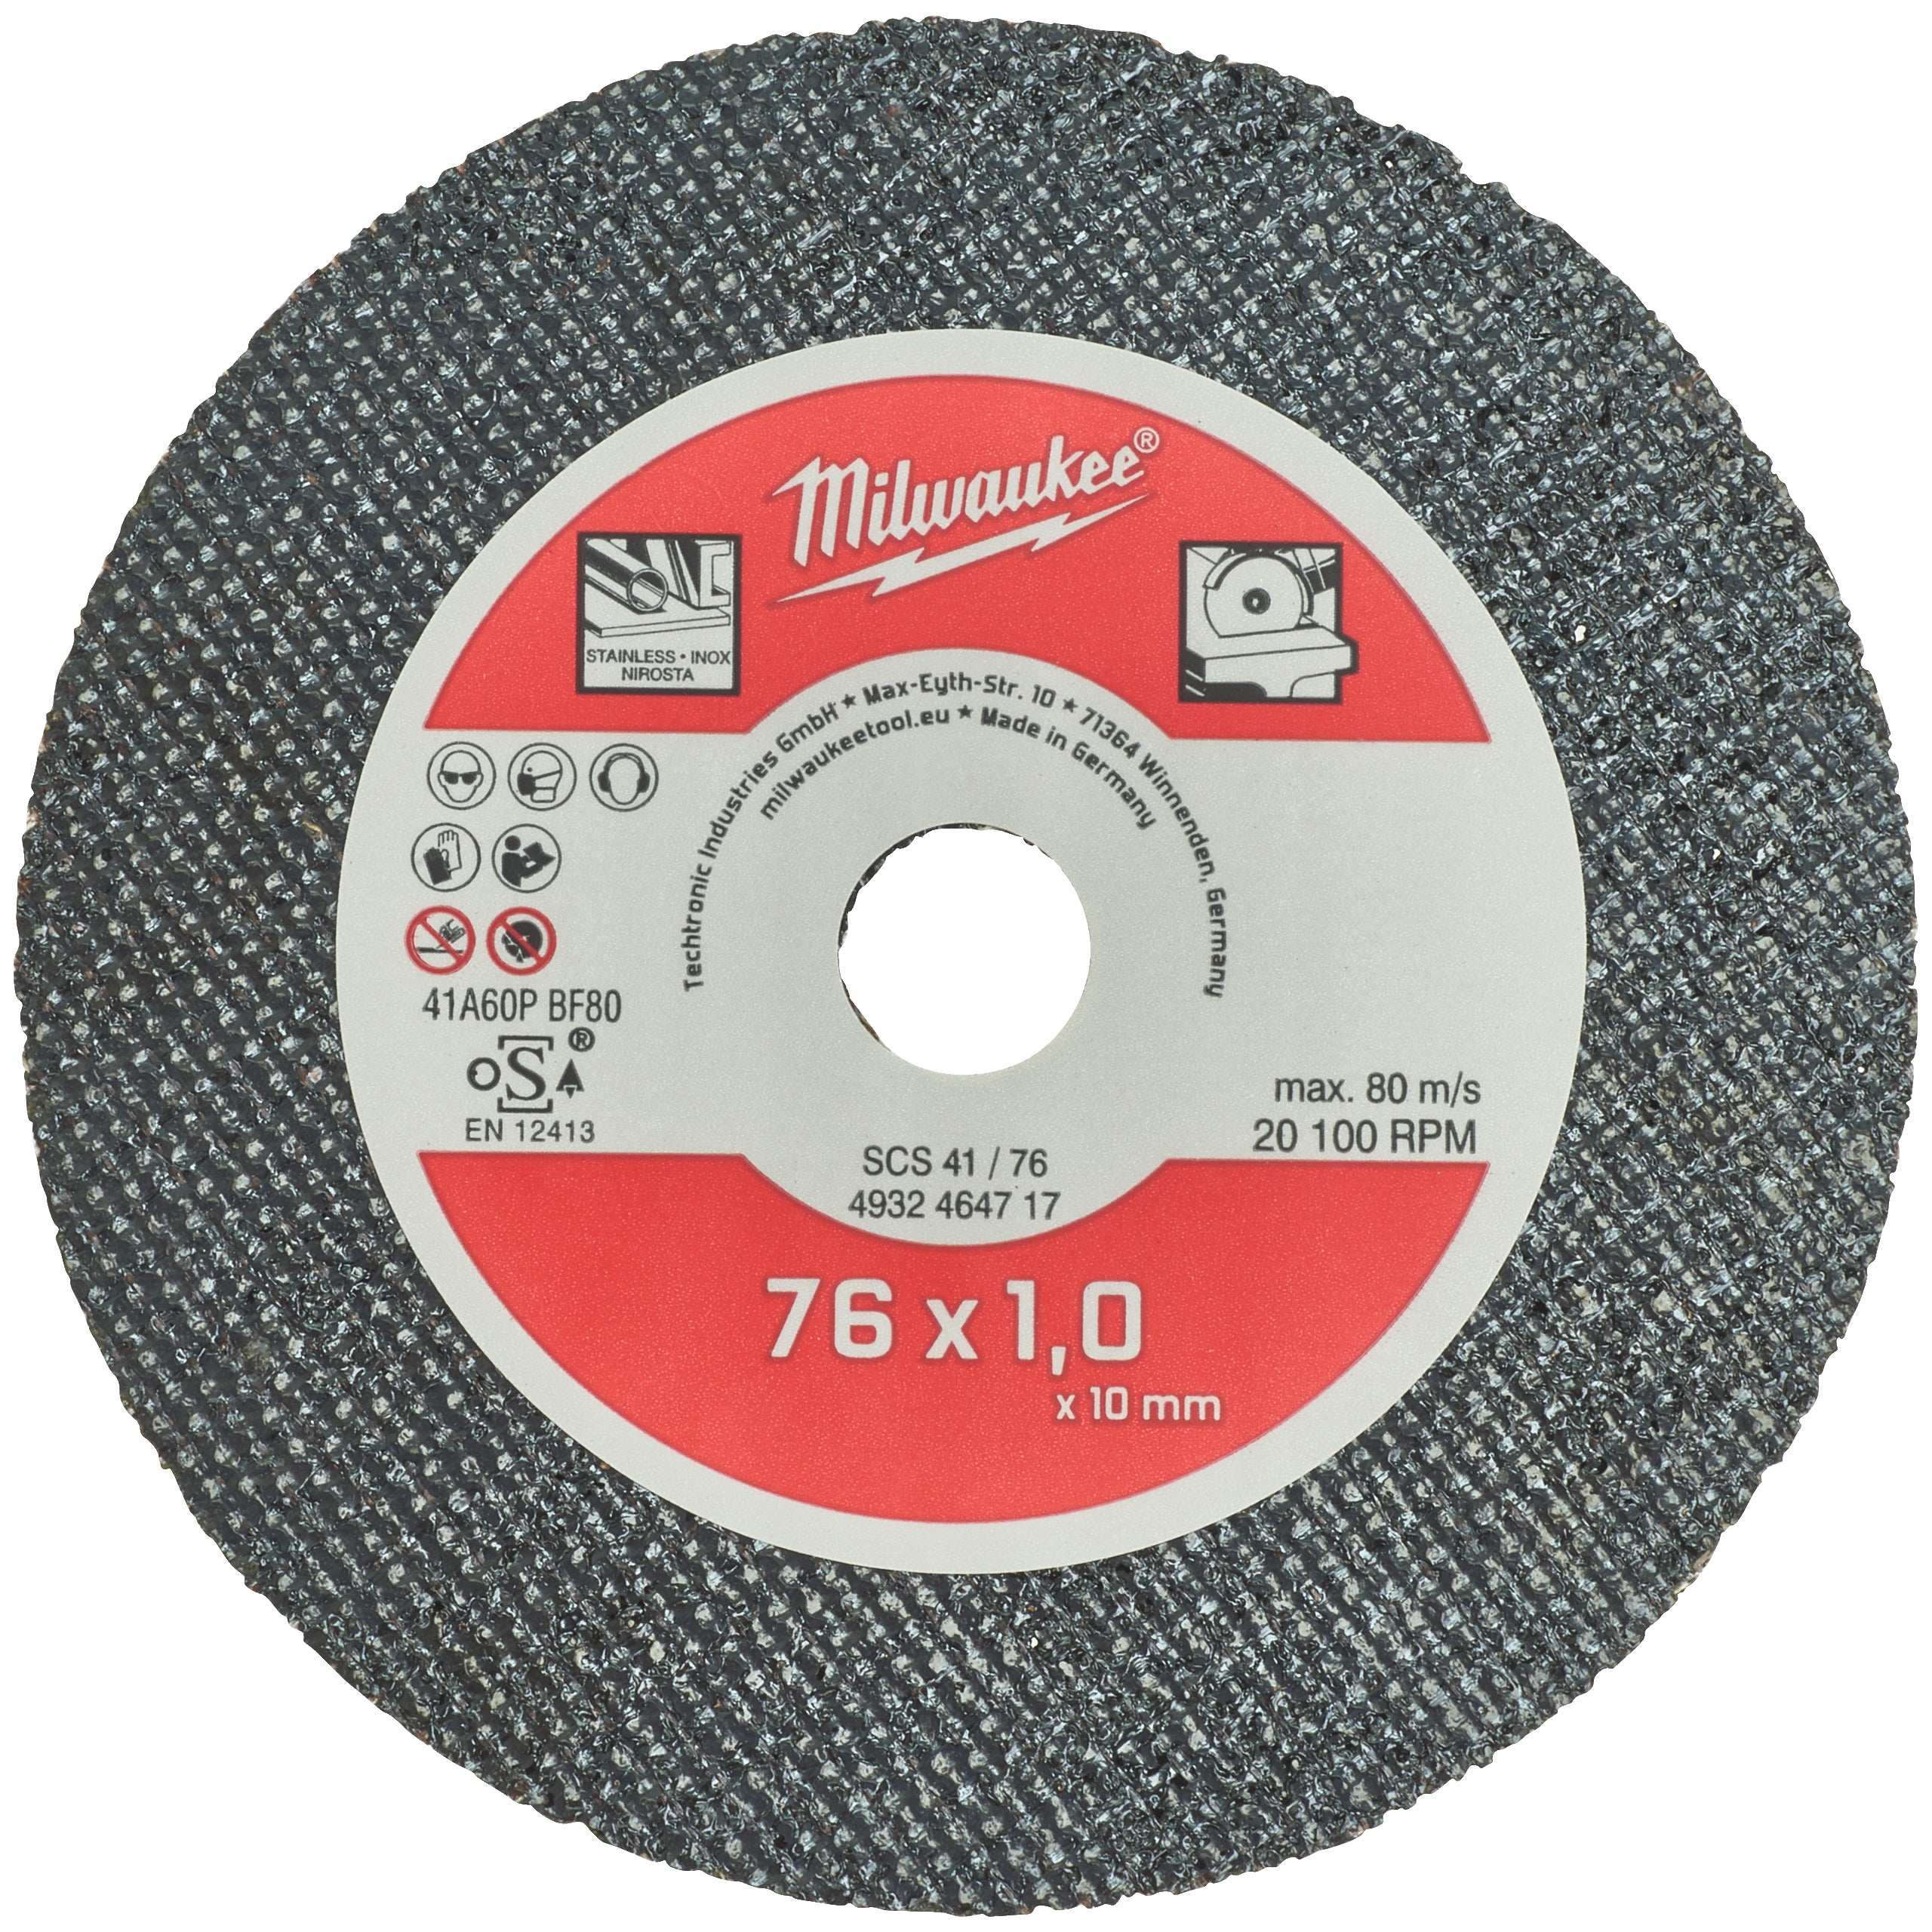 Disc Milwaukee de tăiat metal 76 mm, 5 buc, cod 4932464717